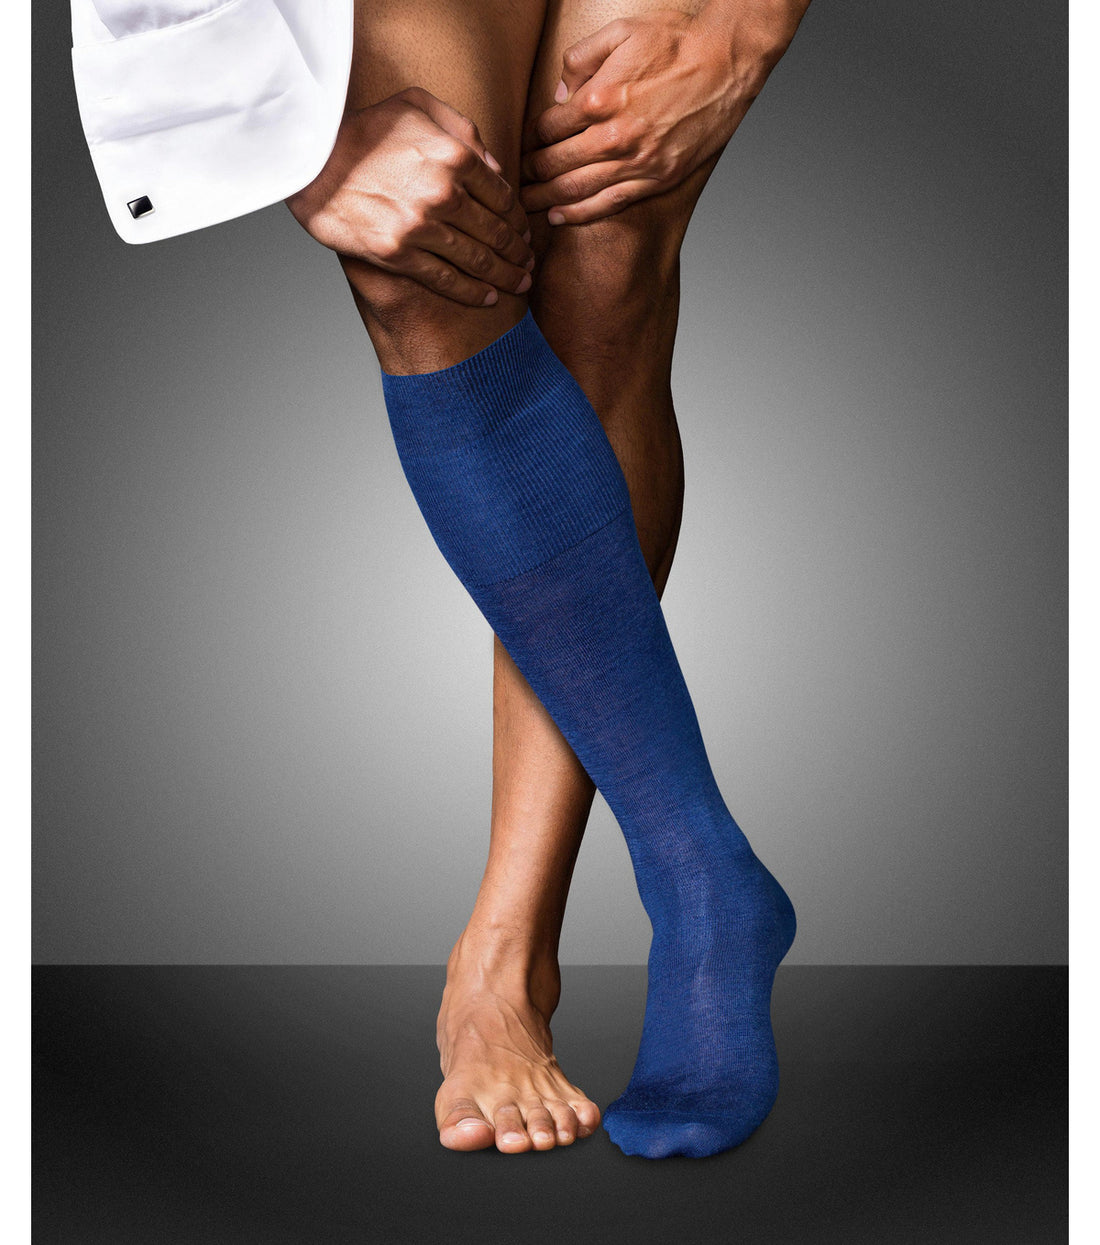 Diabetic Arthritis Socks Online Medical Compression Socks Sierra Socks